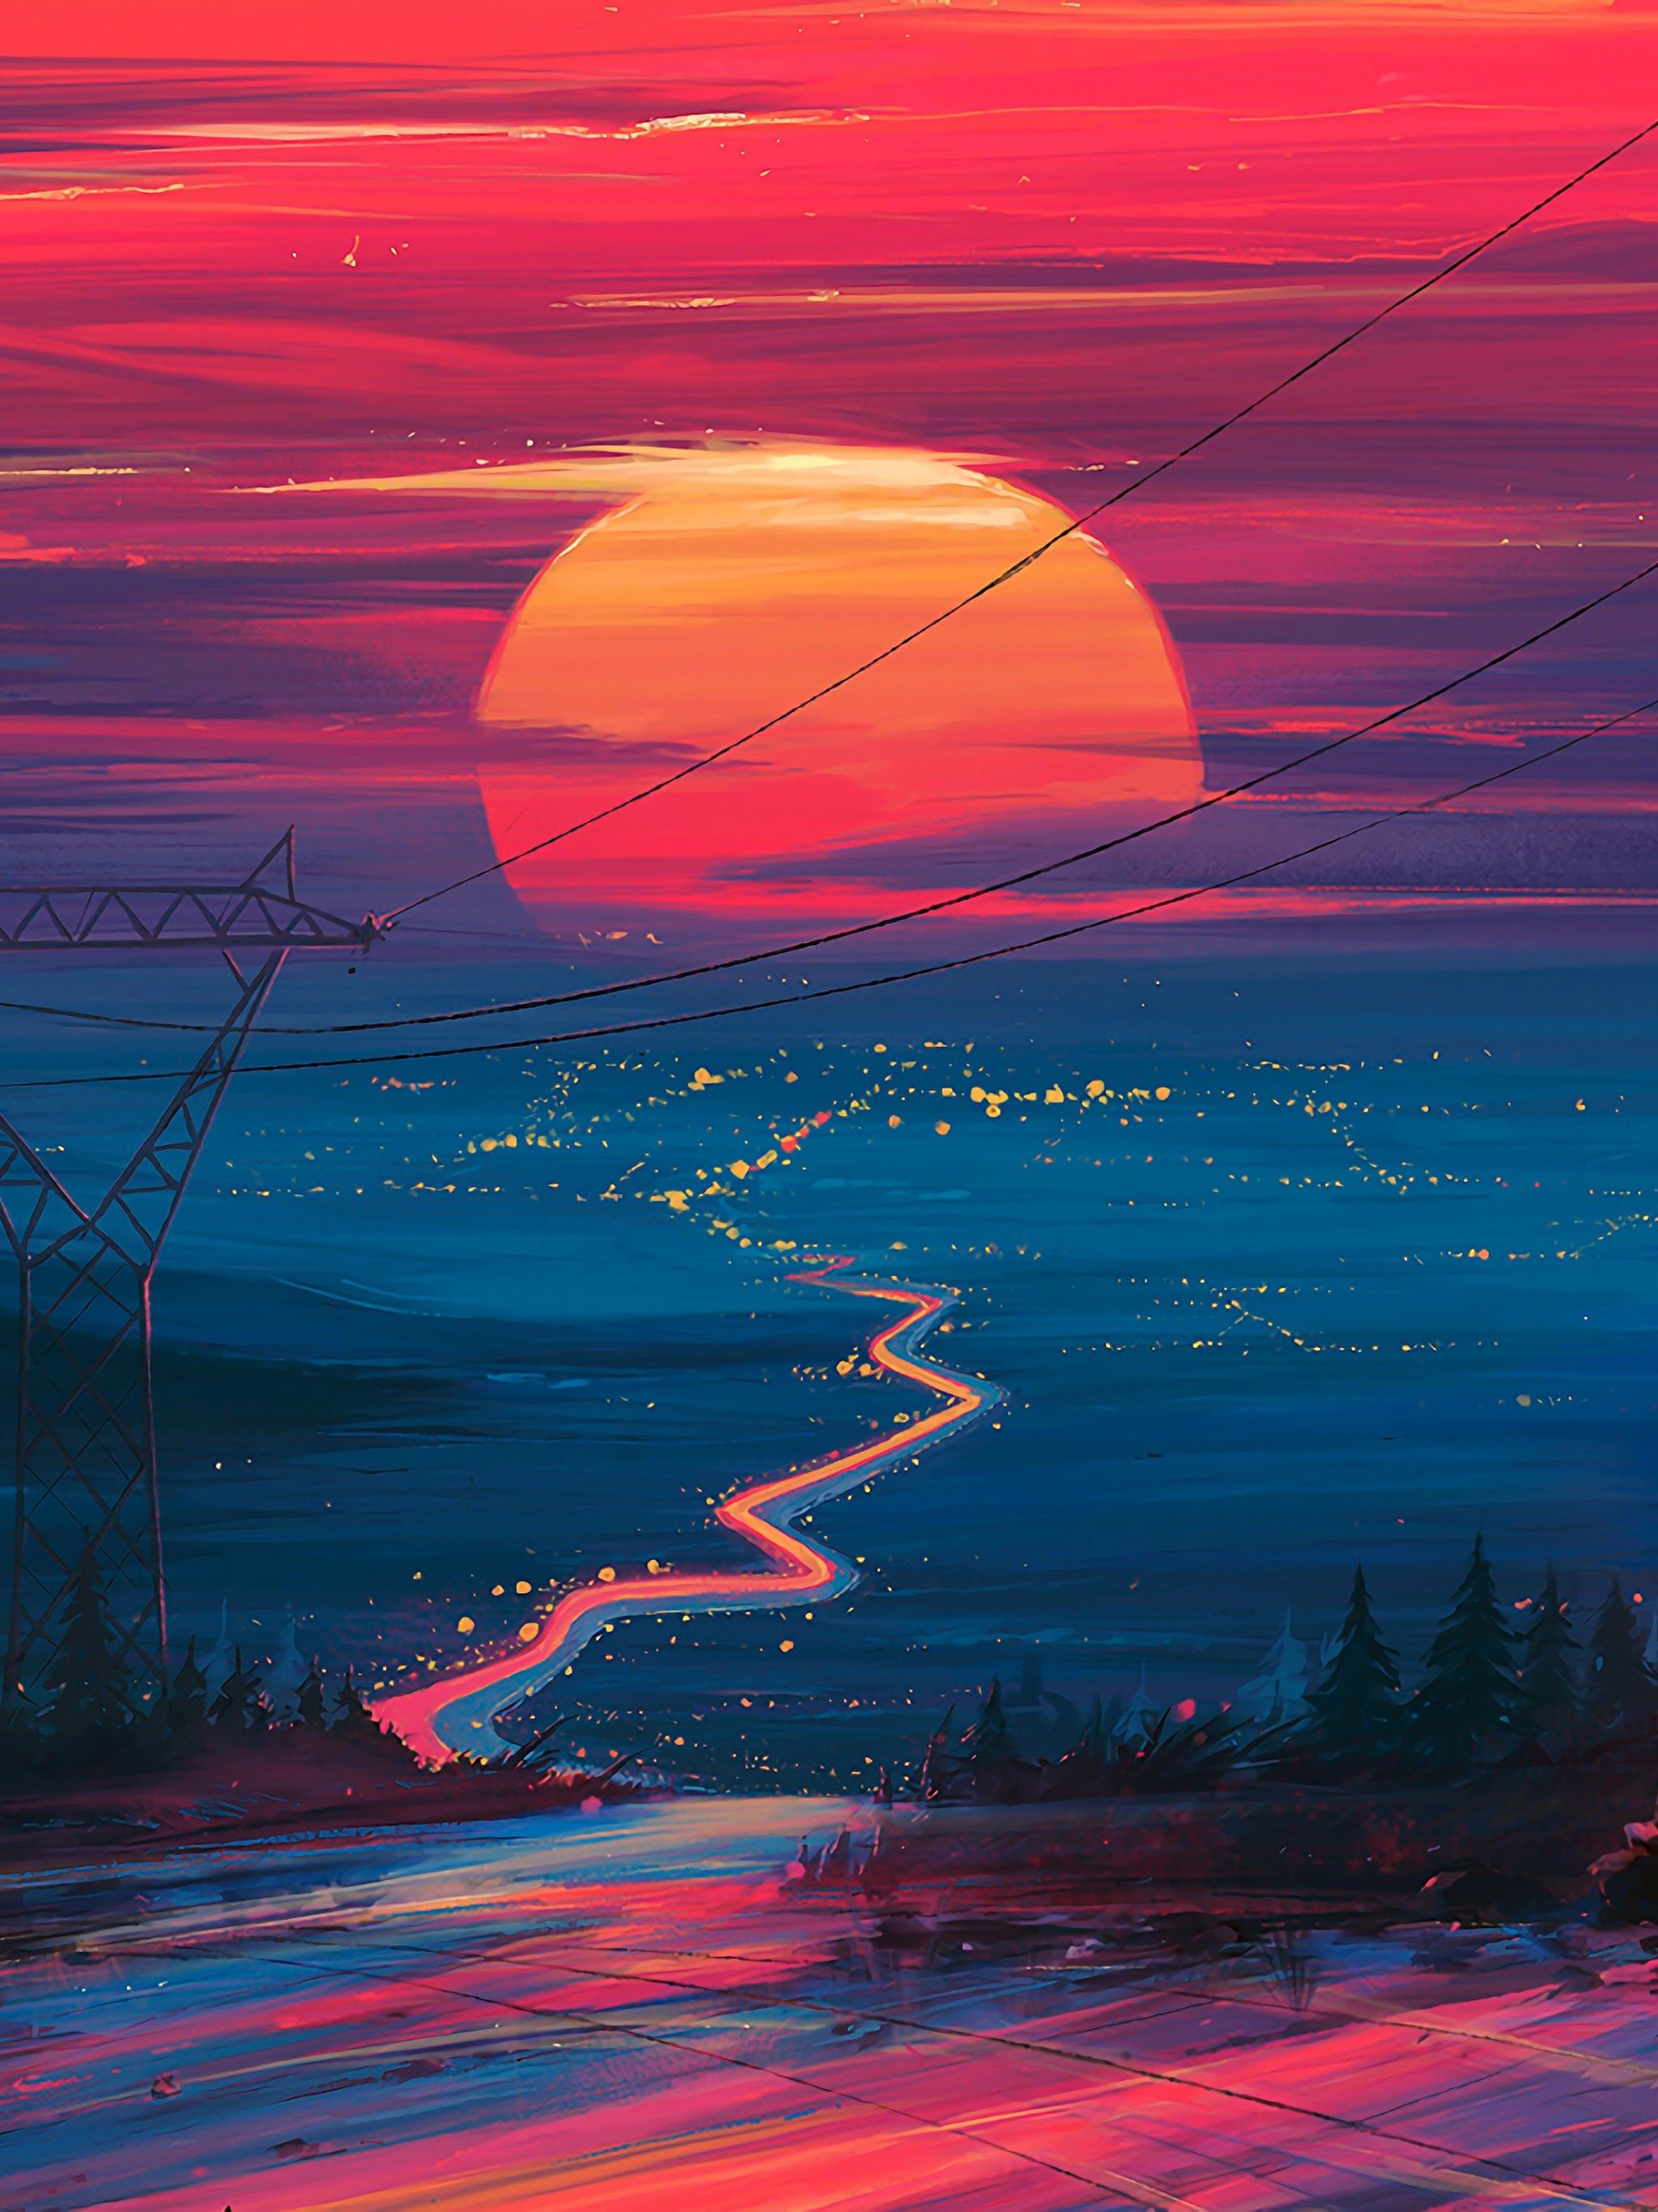 Sunset Horizon Scenery Landscape Art 4K Wallpaper